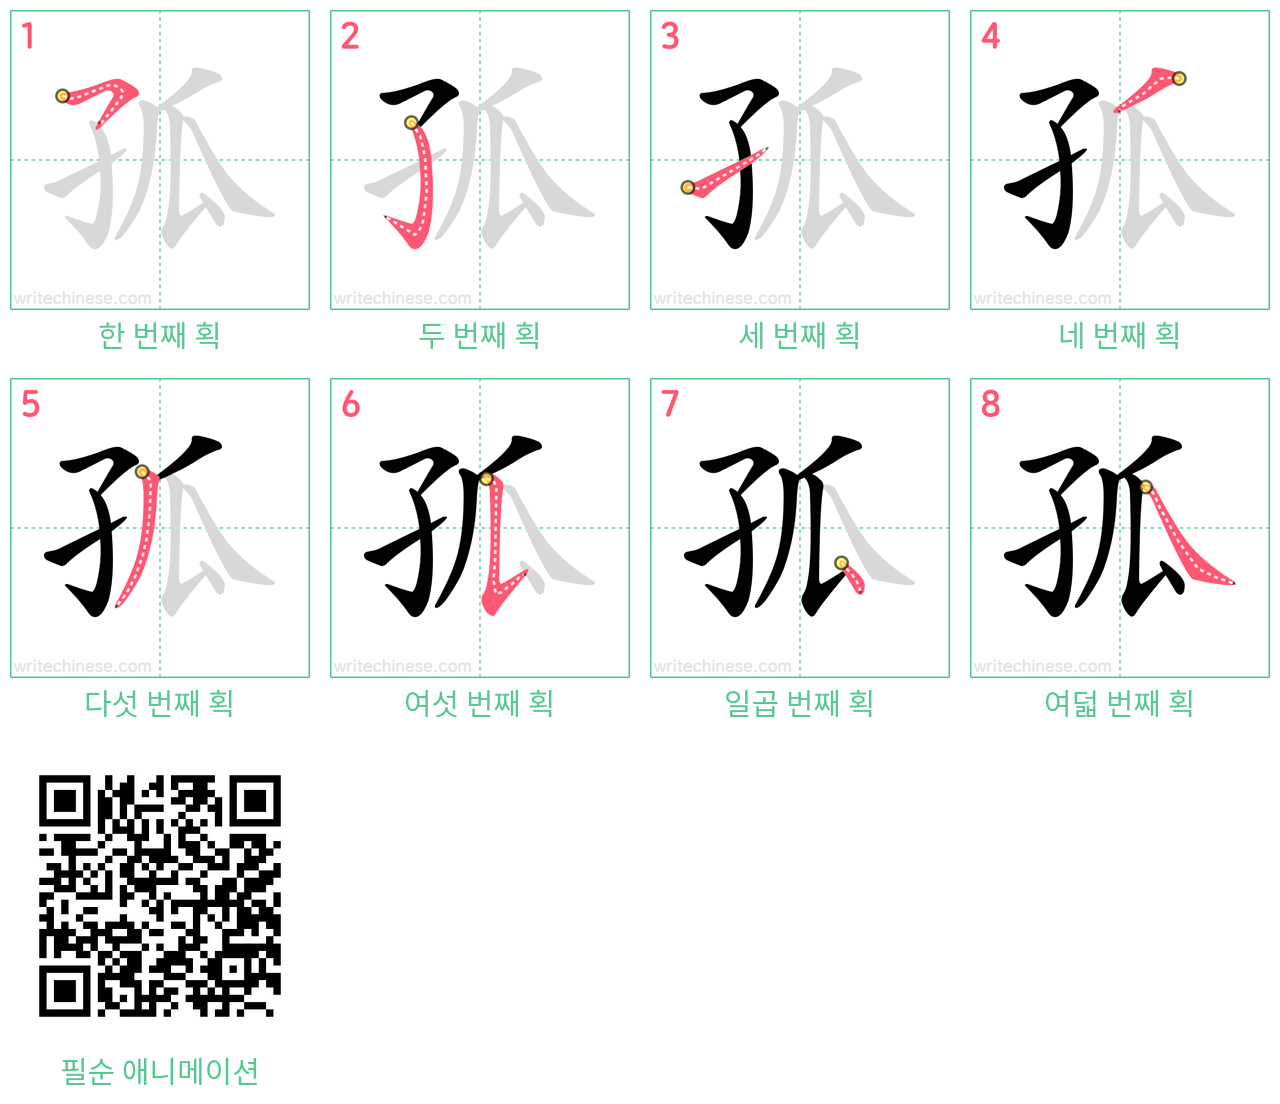 孤 step-by-step stroke order diagrams